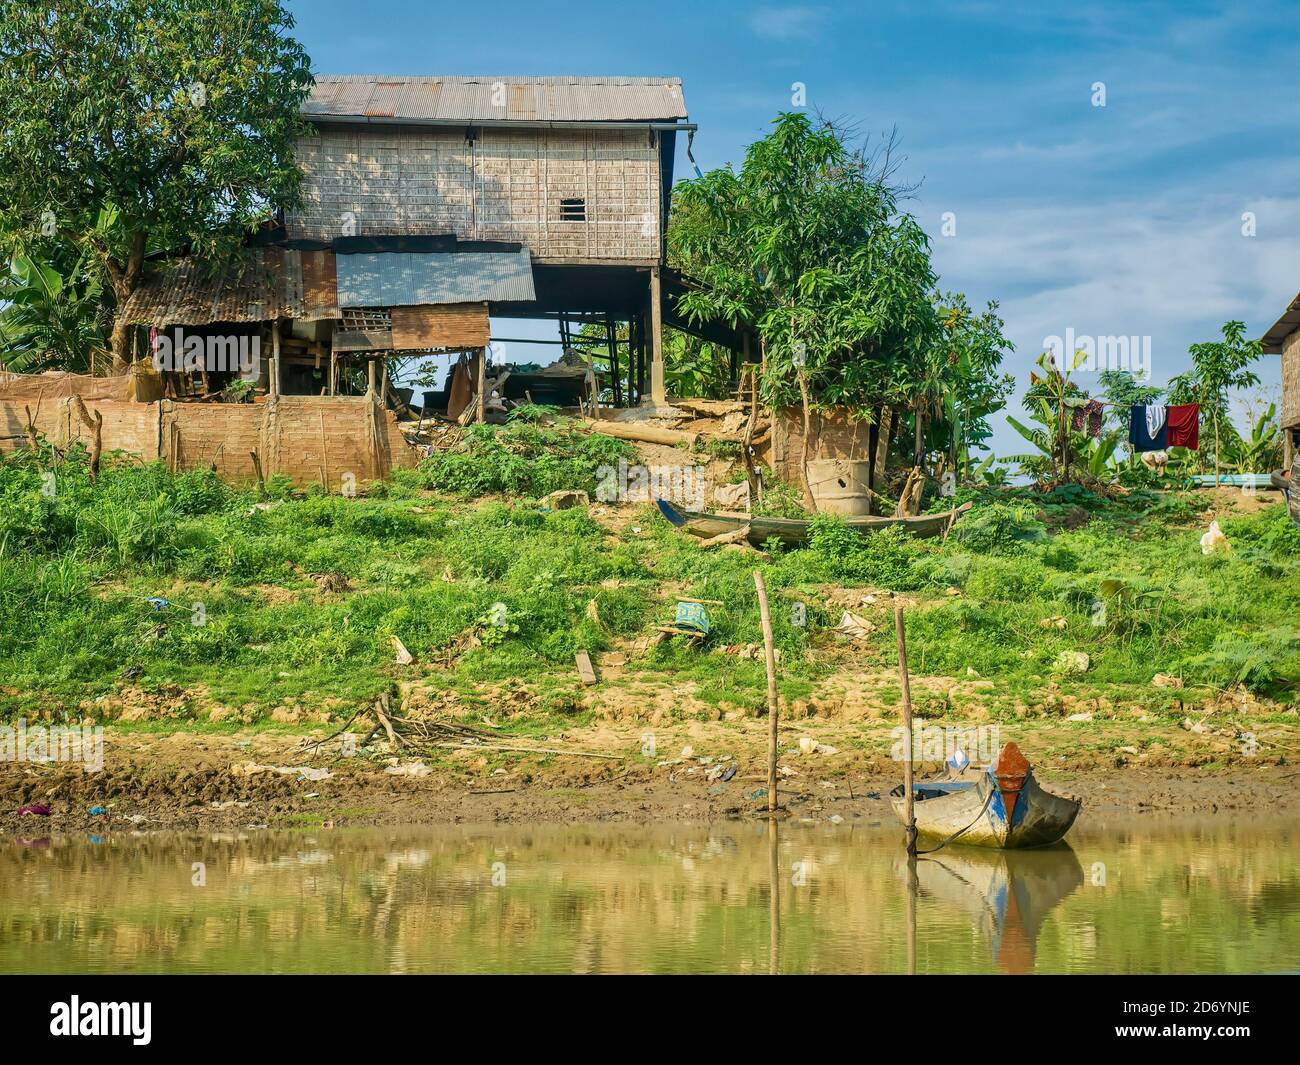 Ein einfaches, ländliches kambodschanisches Haus auf Holzstelzen gebaut, mit strohgedeckten Wänden und einem Metalldach, neben einem Fluss gelegen, mit einem hausgemachten Boot vor. Stockfoto